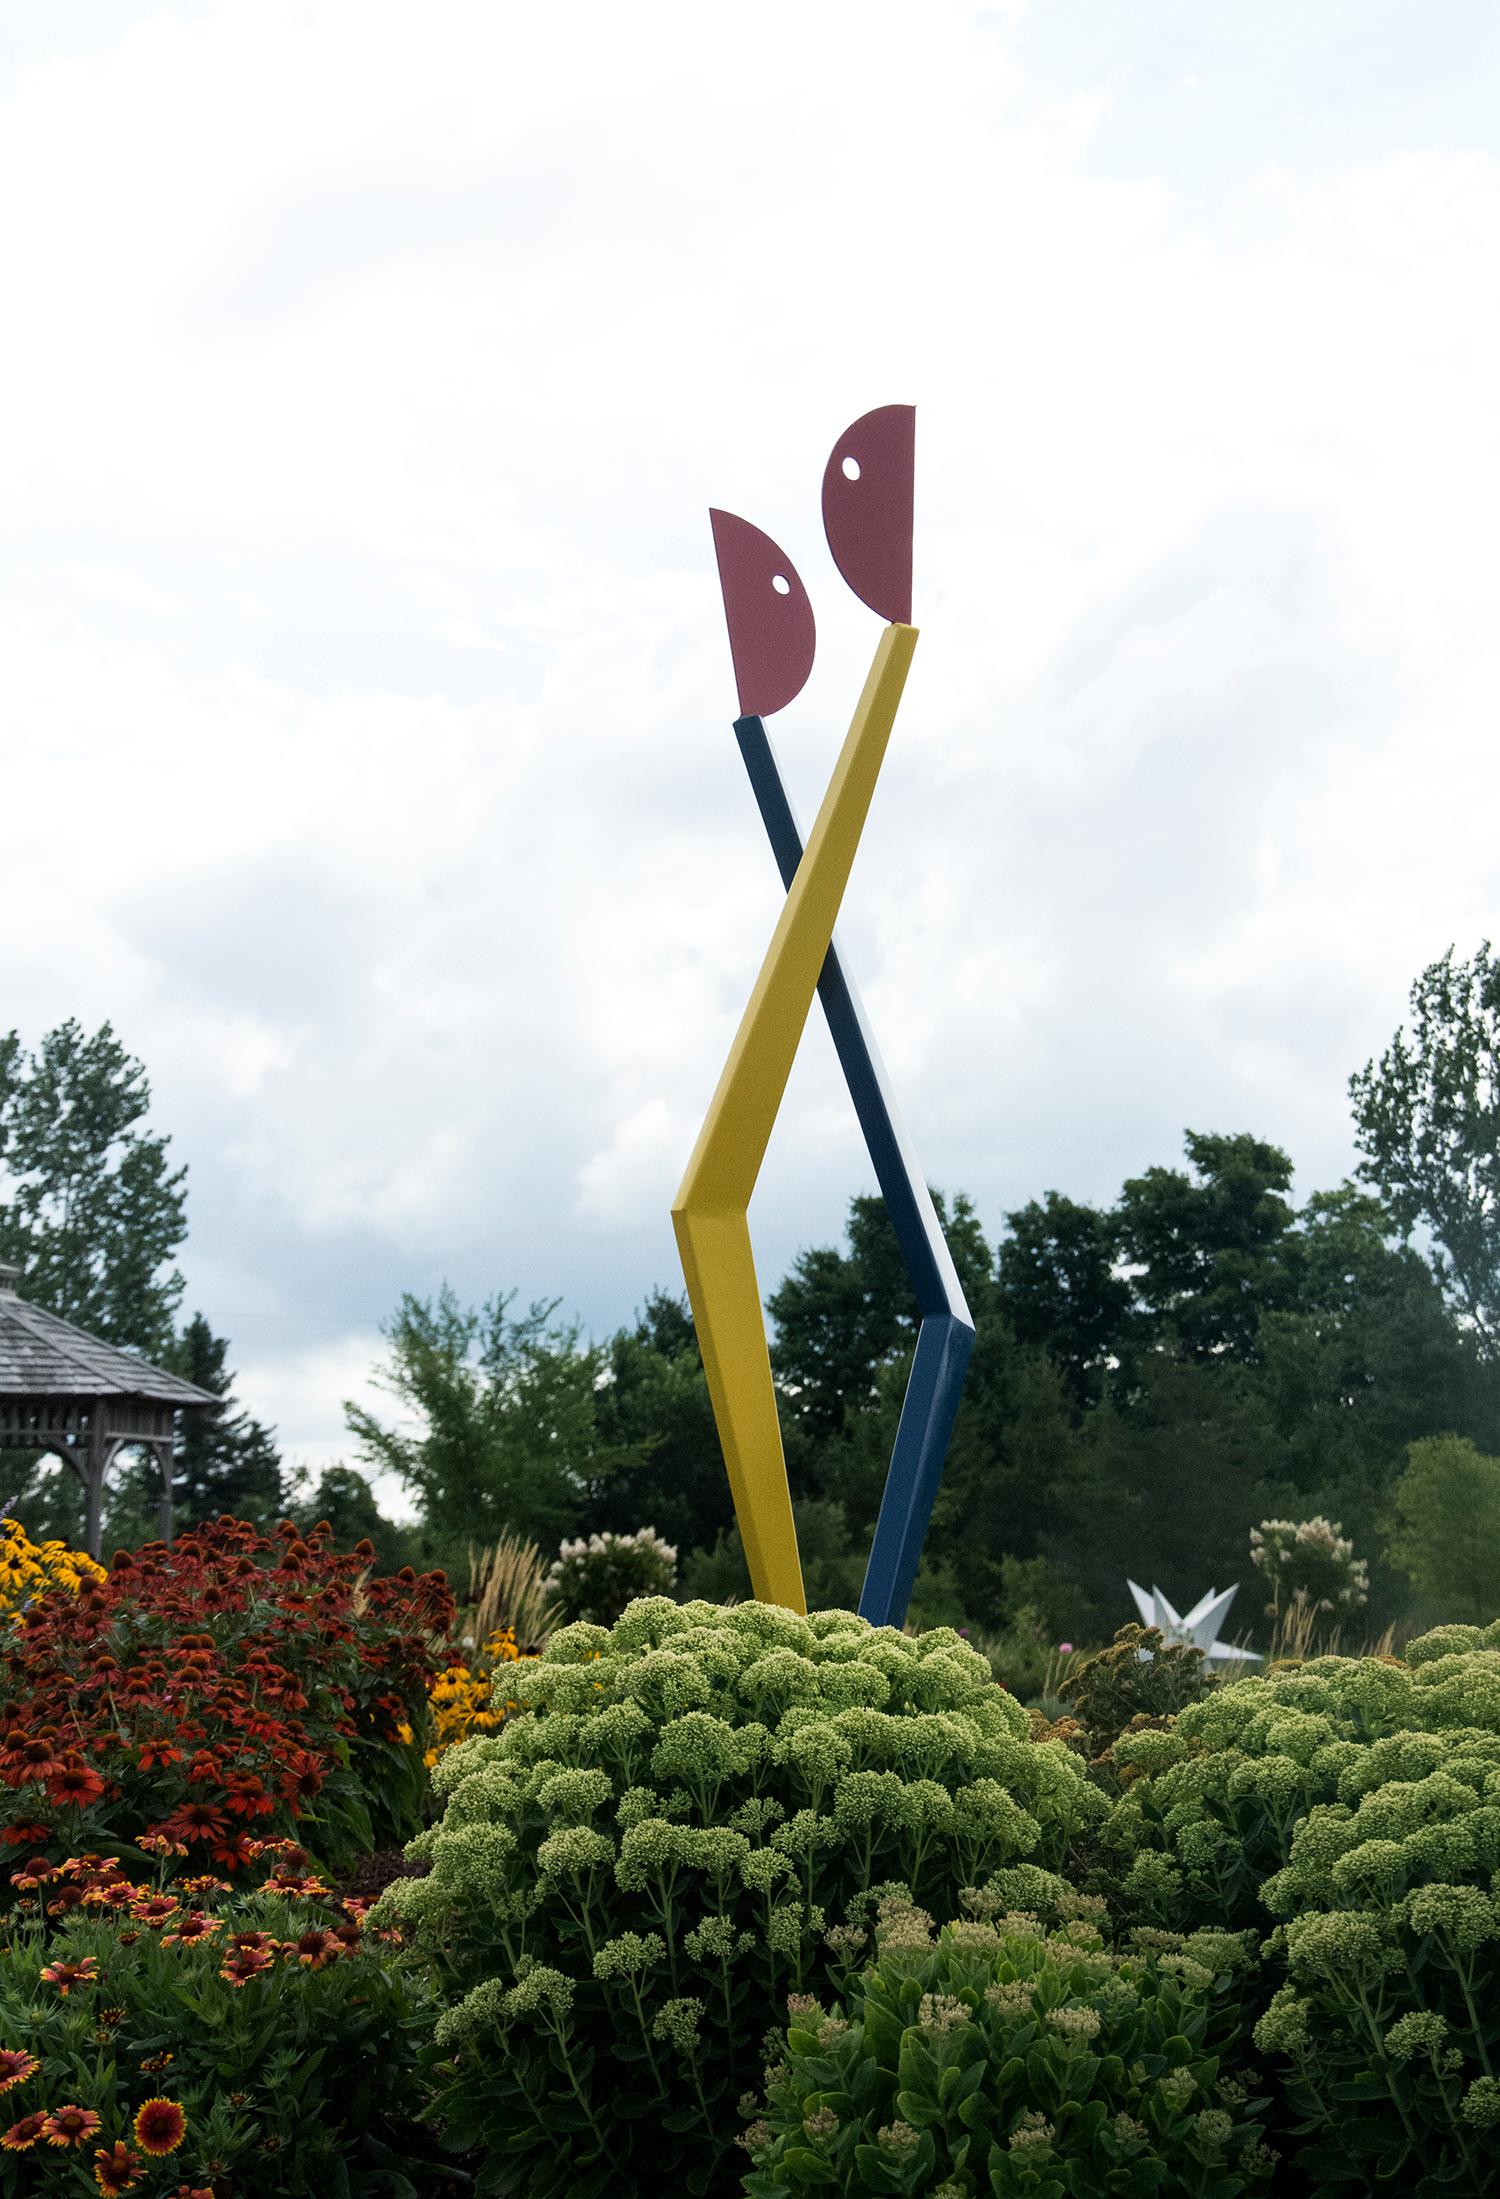 First Dance - playful modernist outdoor sculpture - Abstract Geometric Sculpture by R. Clark Ellis